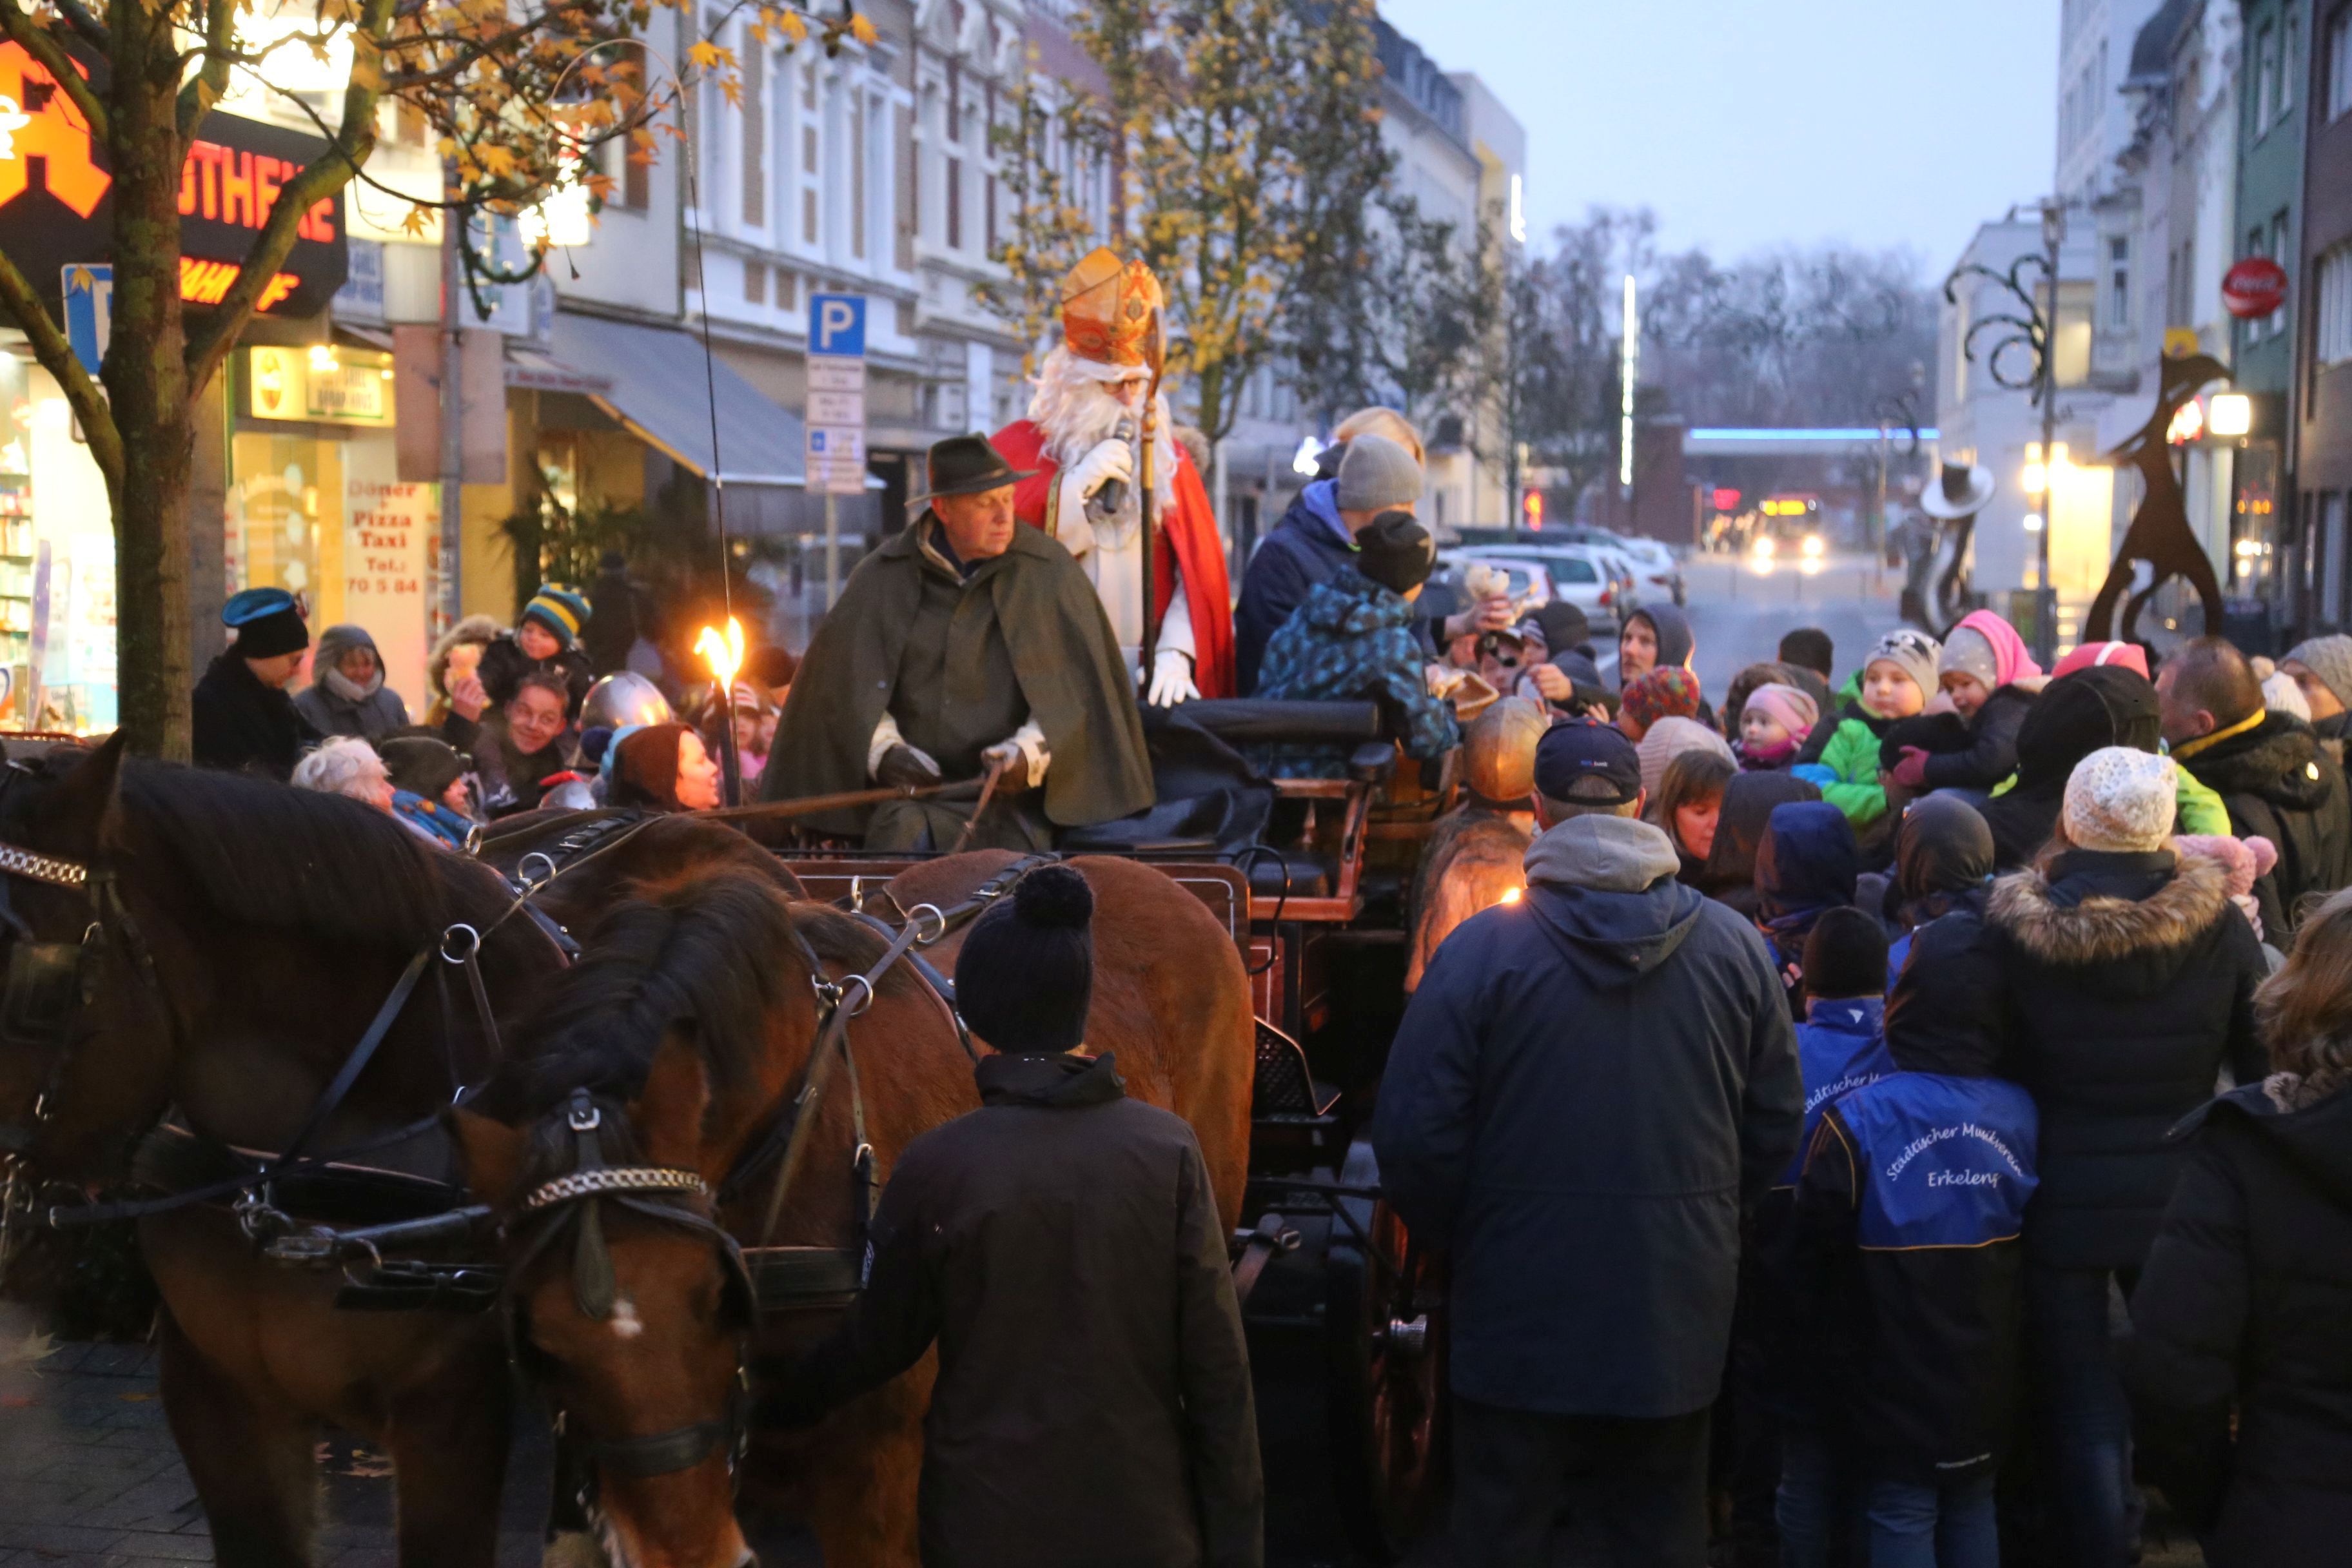 Nikolauskutschfahrt in Erkelenz - viele Kinder mit ihren Eltern warten auf den Nikolaus